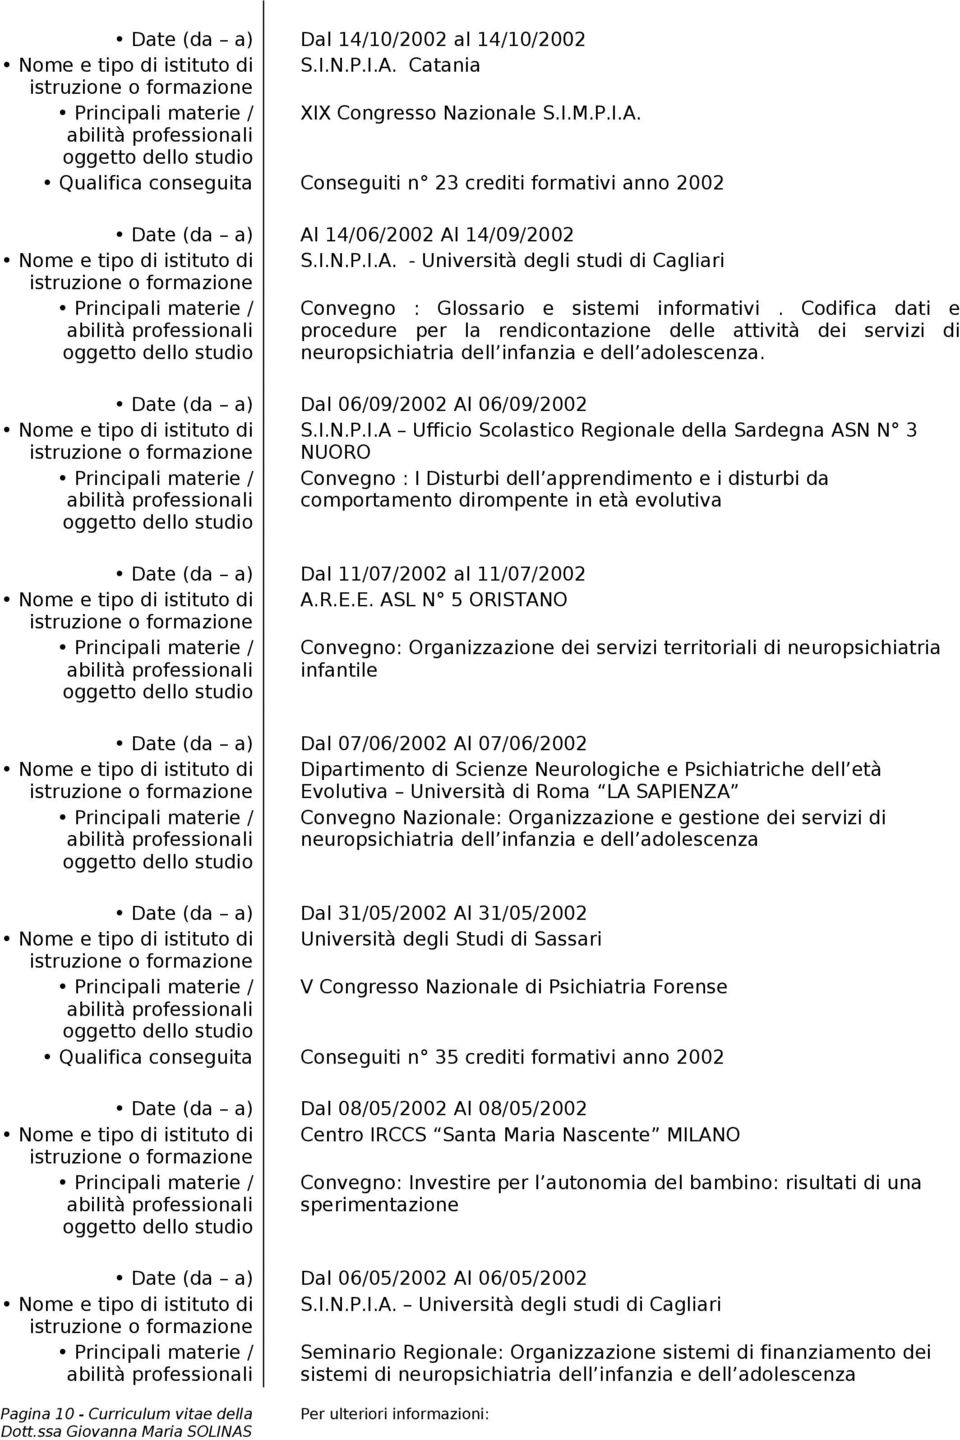 I.N.P.I.A. - Università degli studi di Cagliari Principali materie / Convegno : Glossario e sistemi informativi.